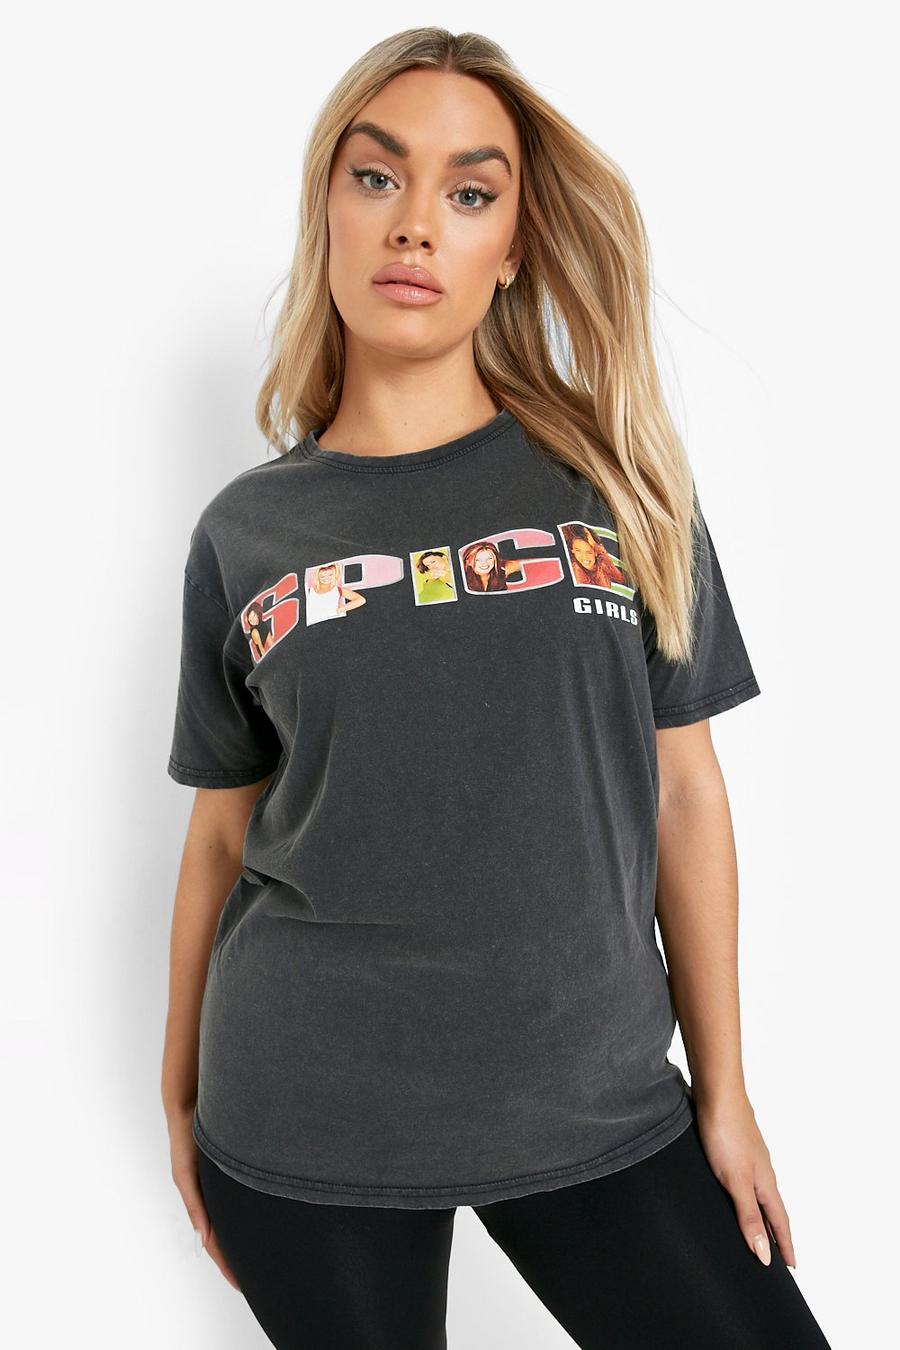 T-shirt Plus Size in lavaggio acido ufficiale Spice Girls, Charcoal grigio